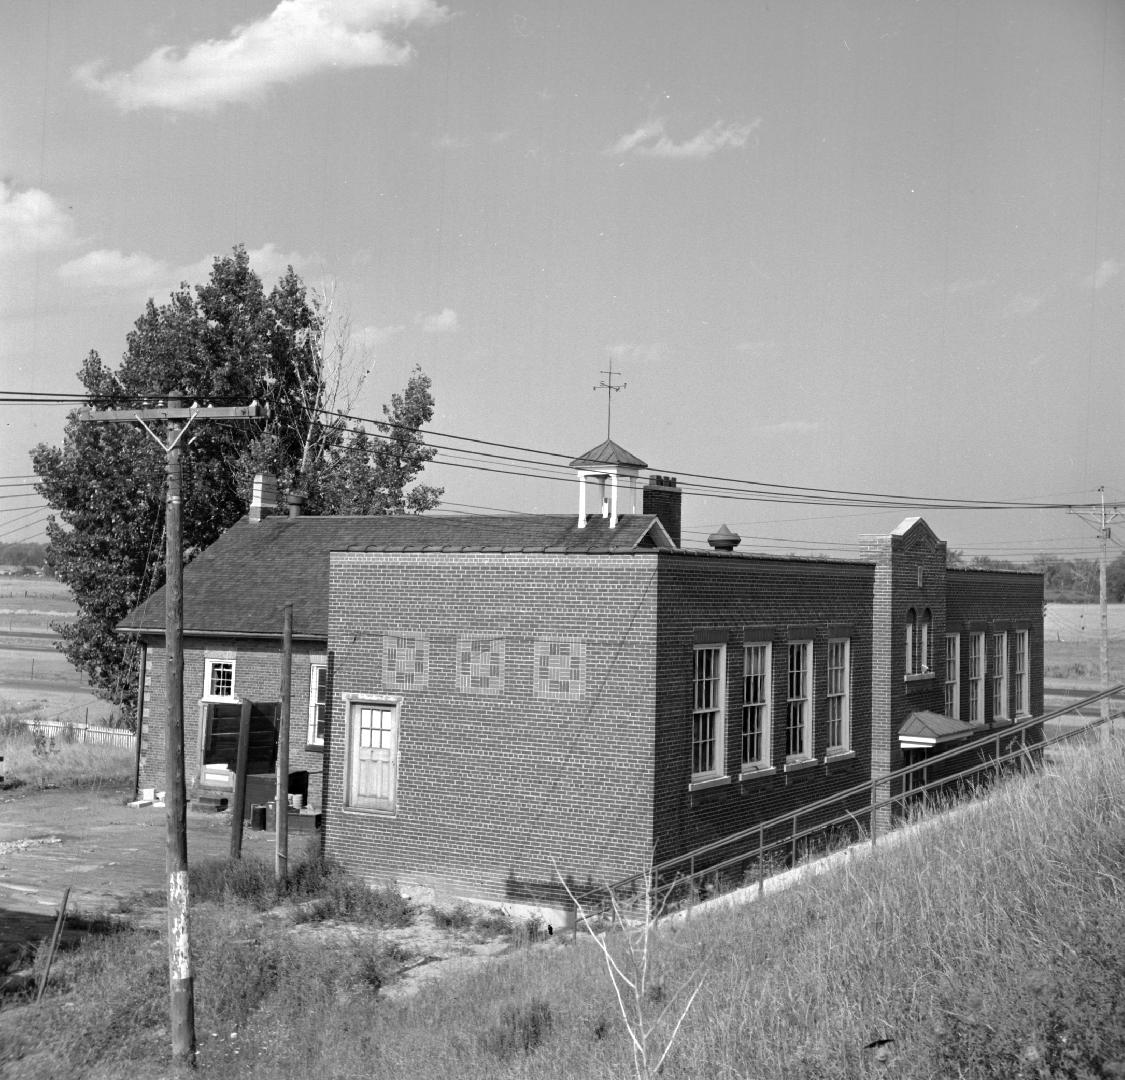 Eatonville Public School (opened 1870), Highway 427, northwest corner Bloor Street West